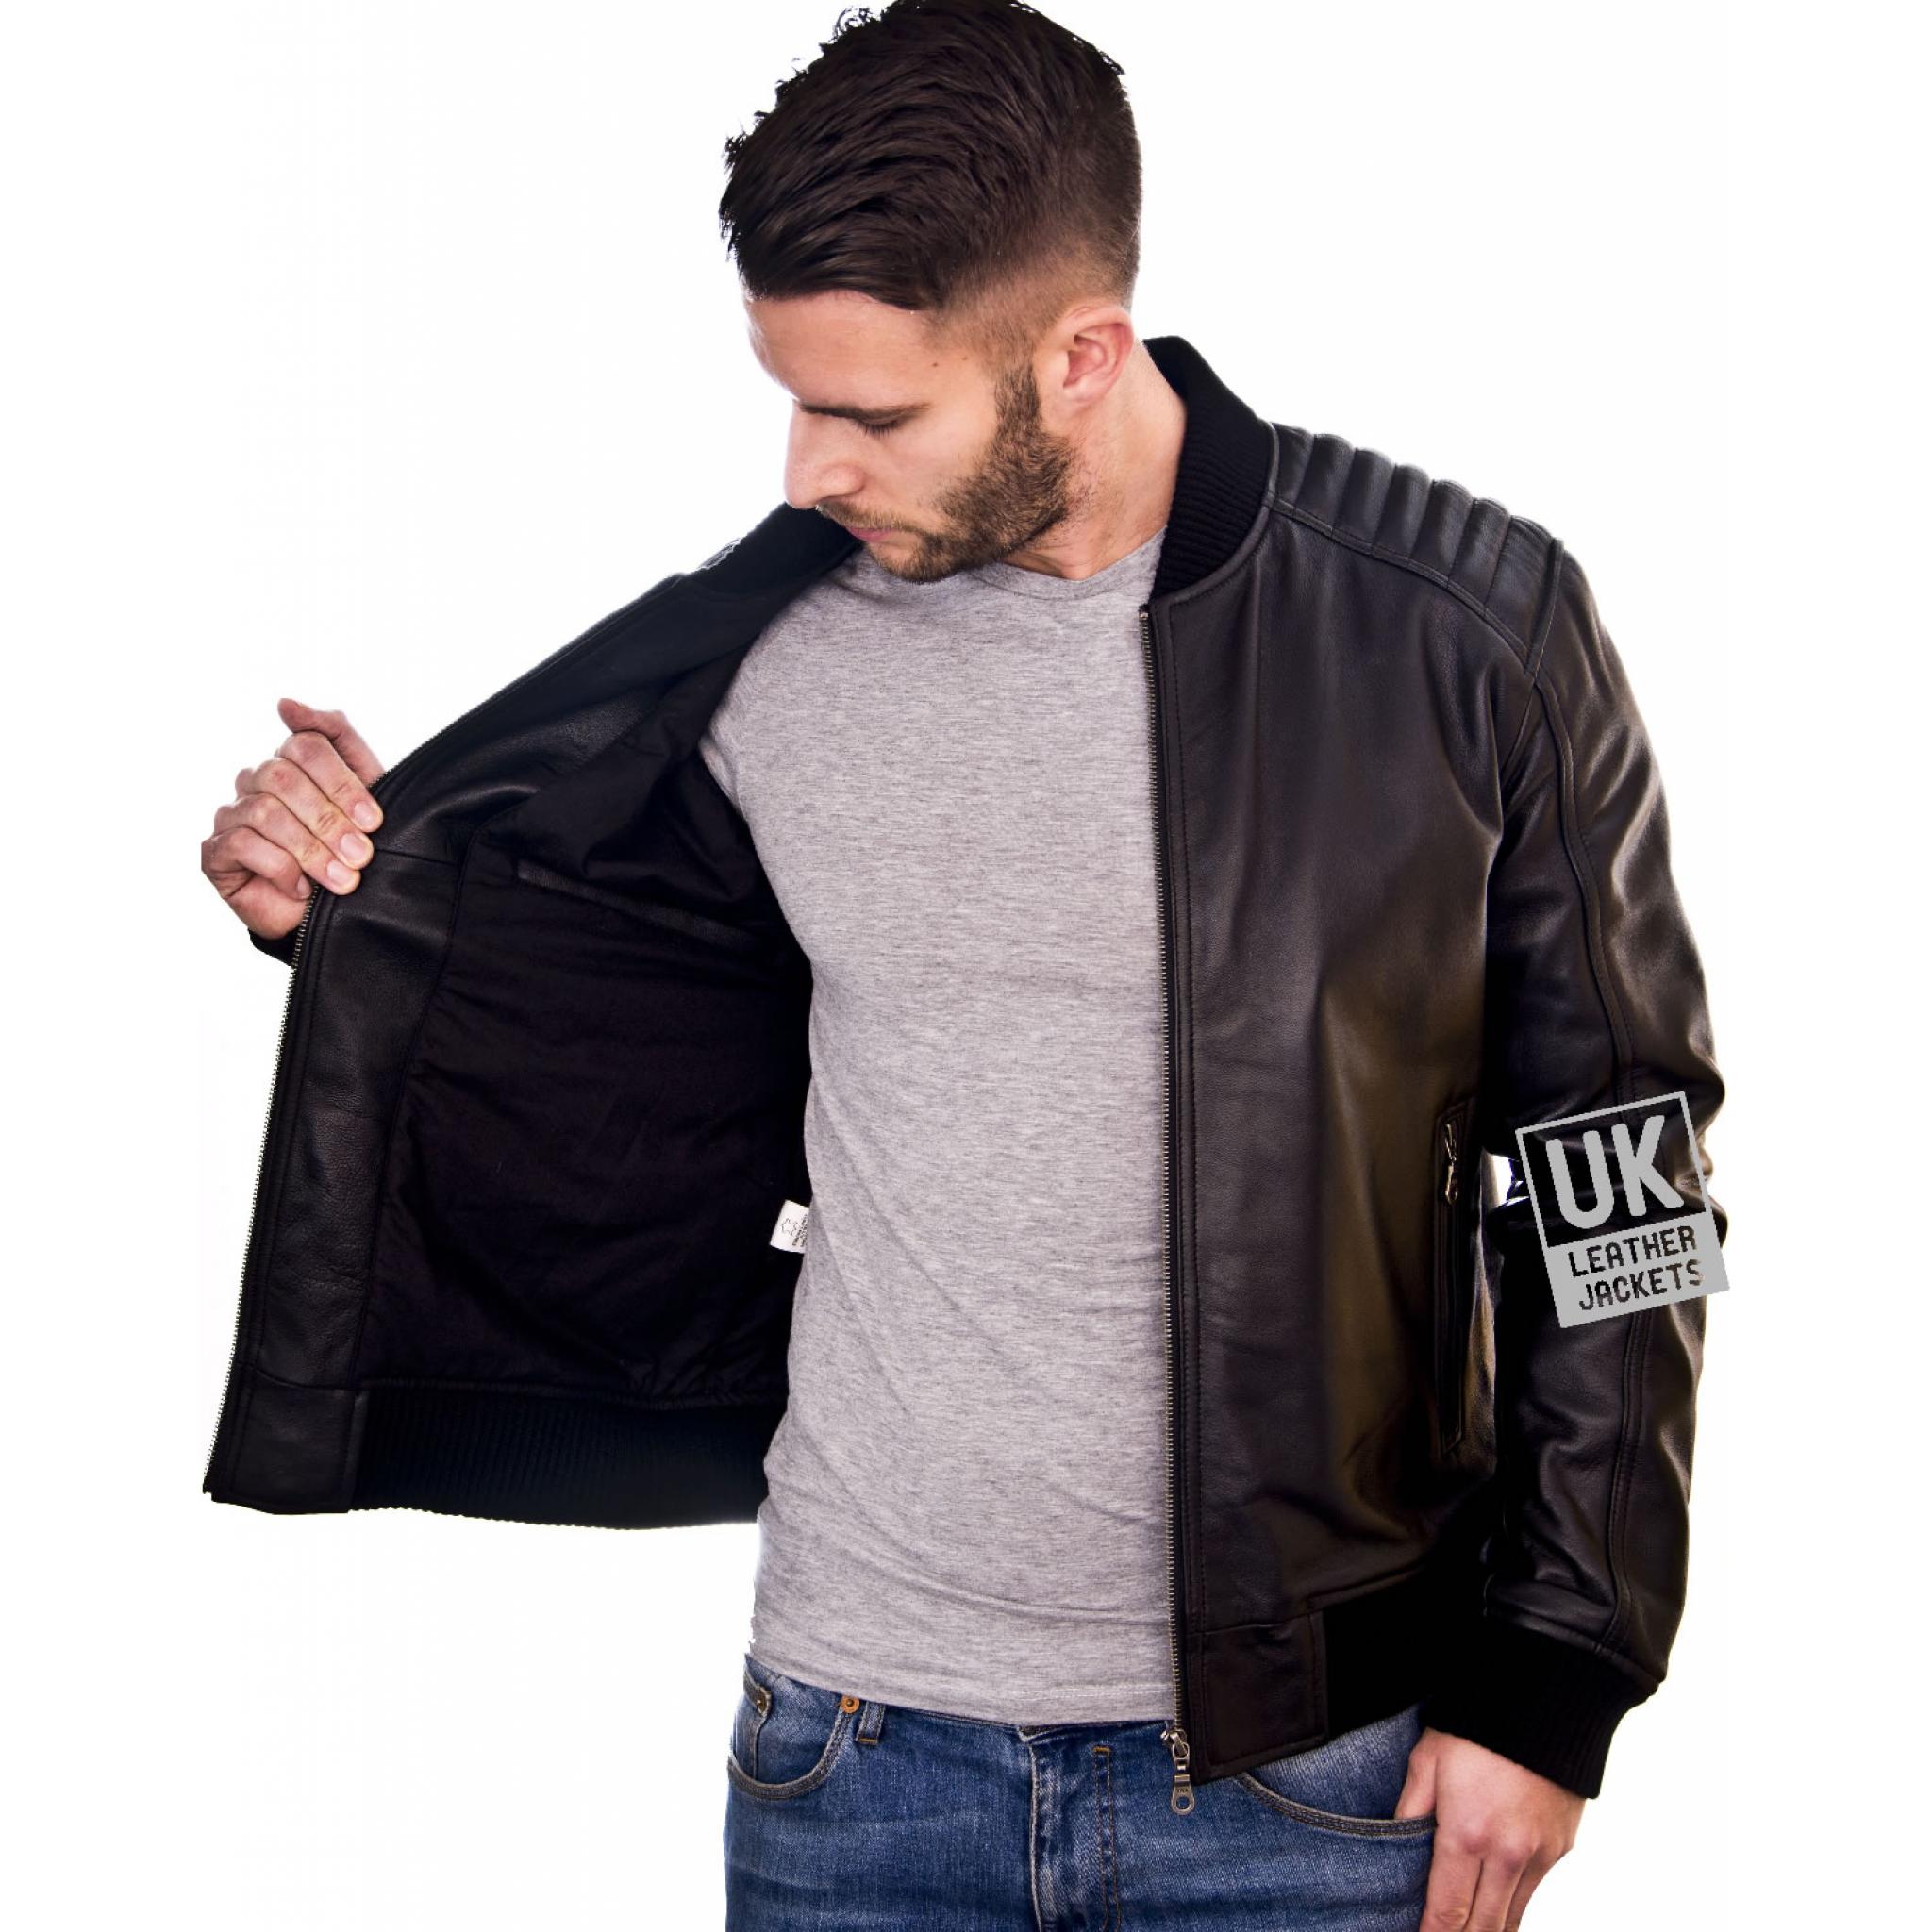 Men's Black Leather Bomber Jacket - Ventega | UK Leather Jackets